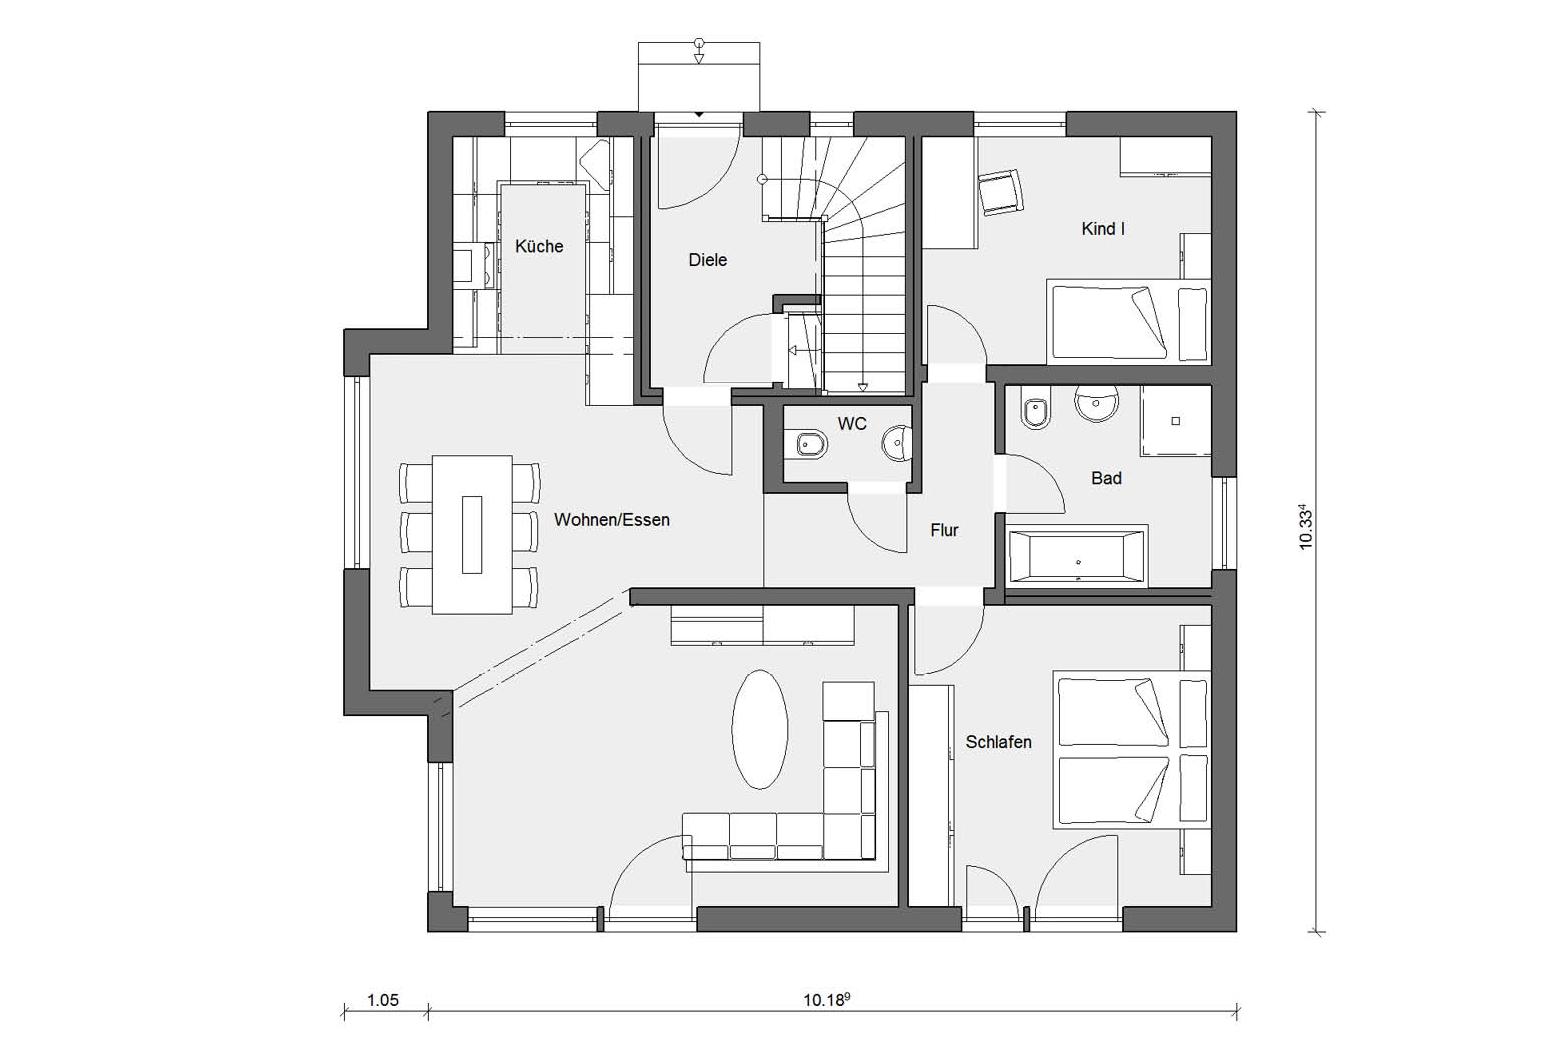 Floor plan ground floor M 15-179.2 Detached house with studio flat